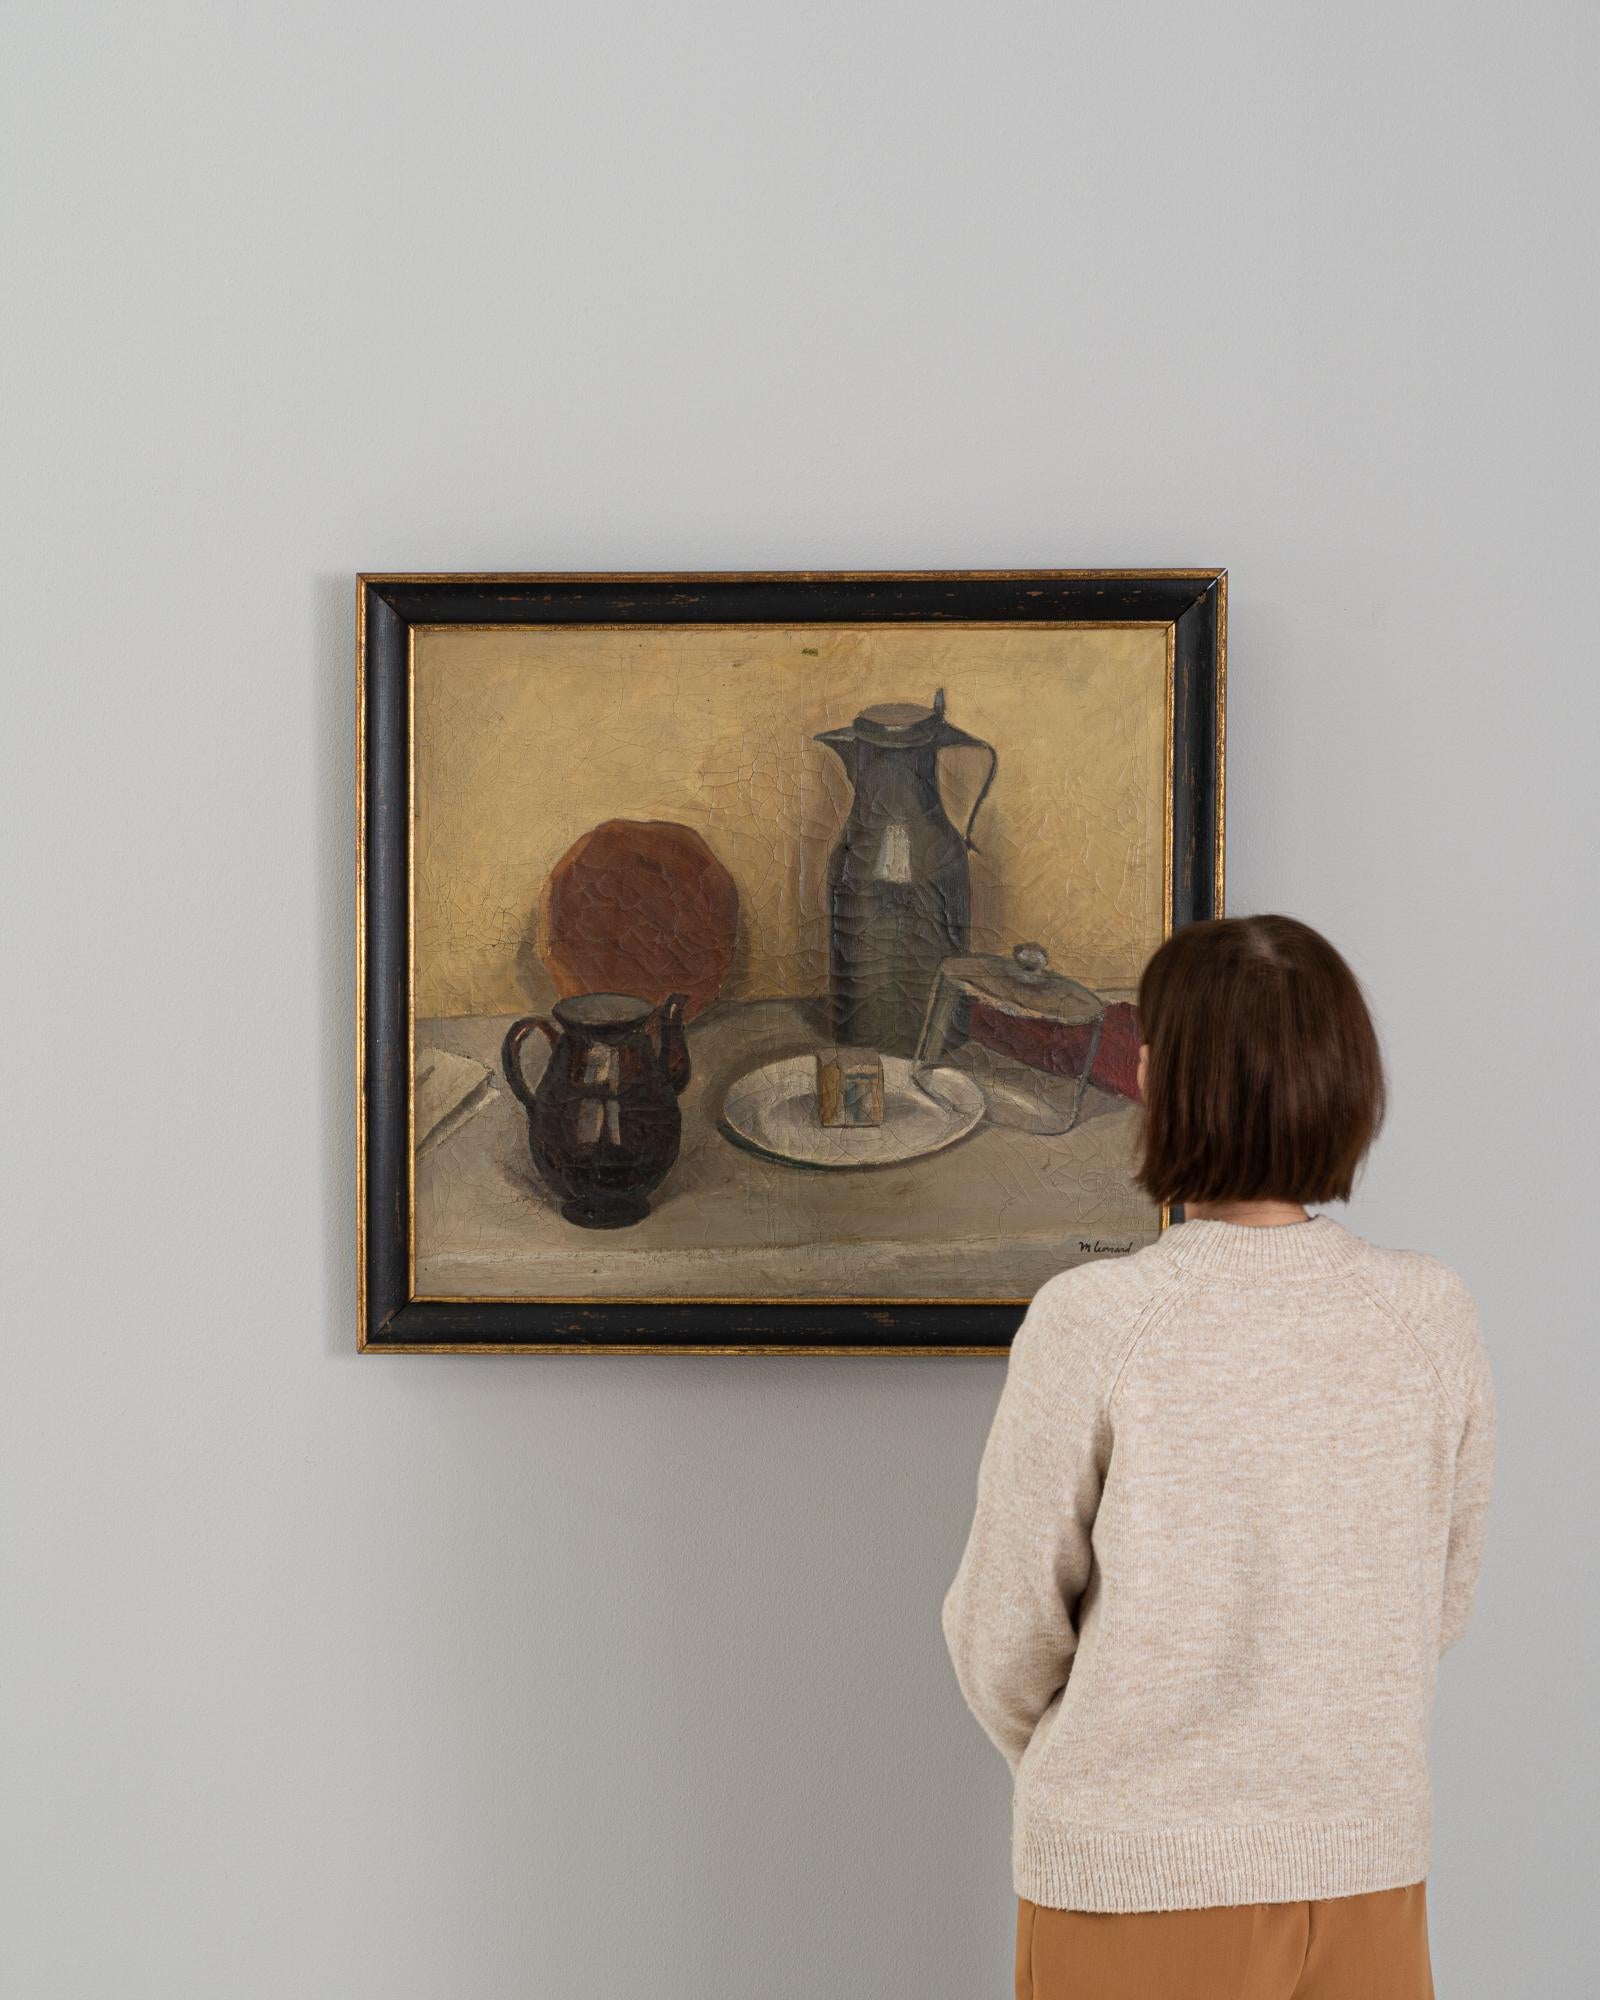 Cette peinture belge du XXe siècle est une nature morte sereine, capturant l'élégance simple d'objets quotidiens disposés selon une composition réfléchie. La palette terreuse de l'œuvre est apaisante et évoque un sentiment de calme et